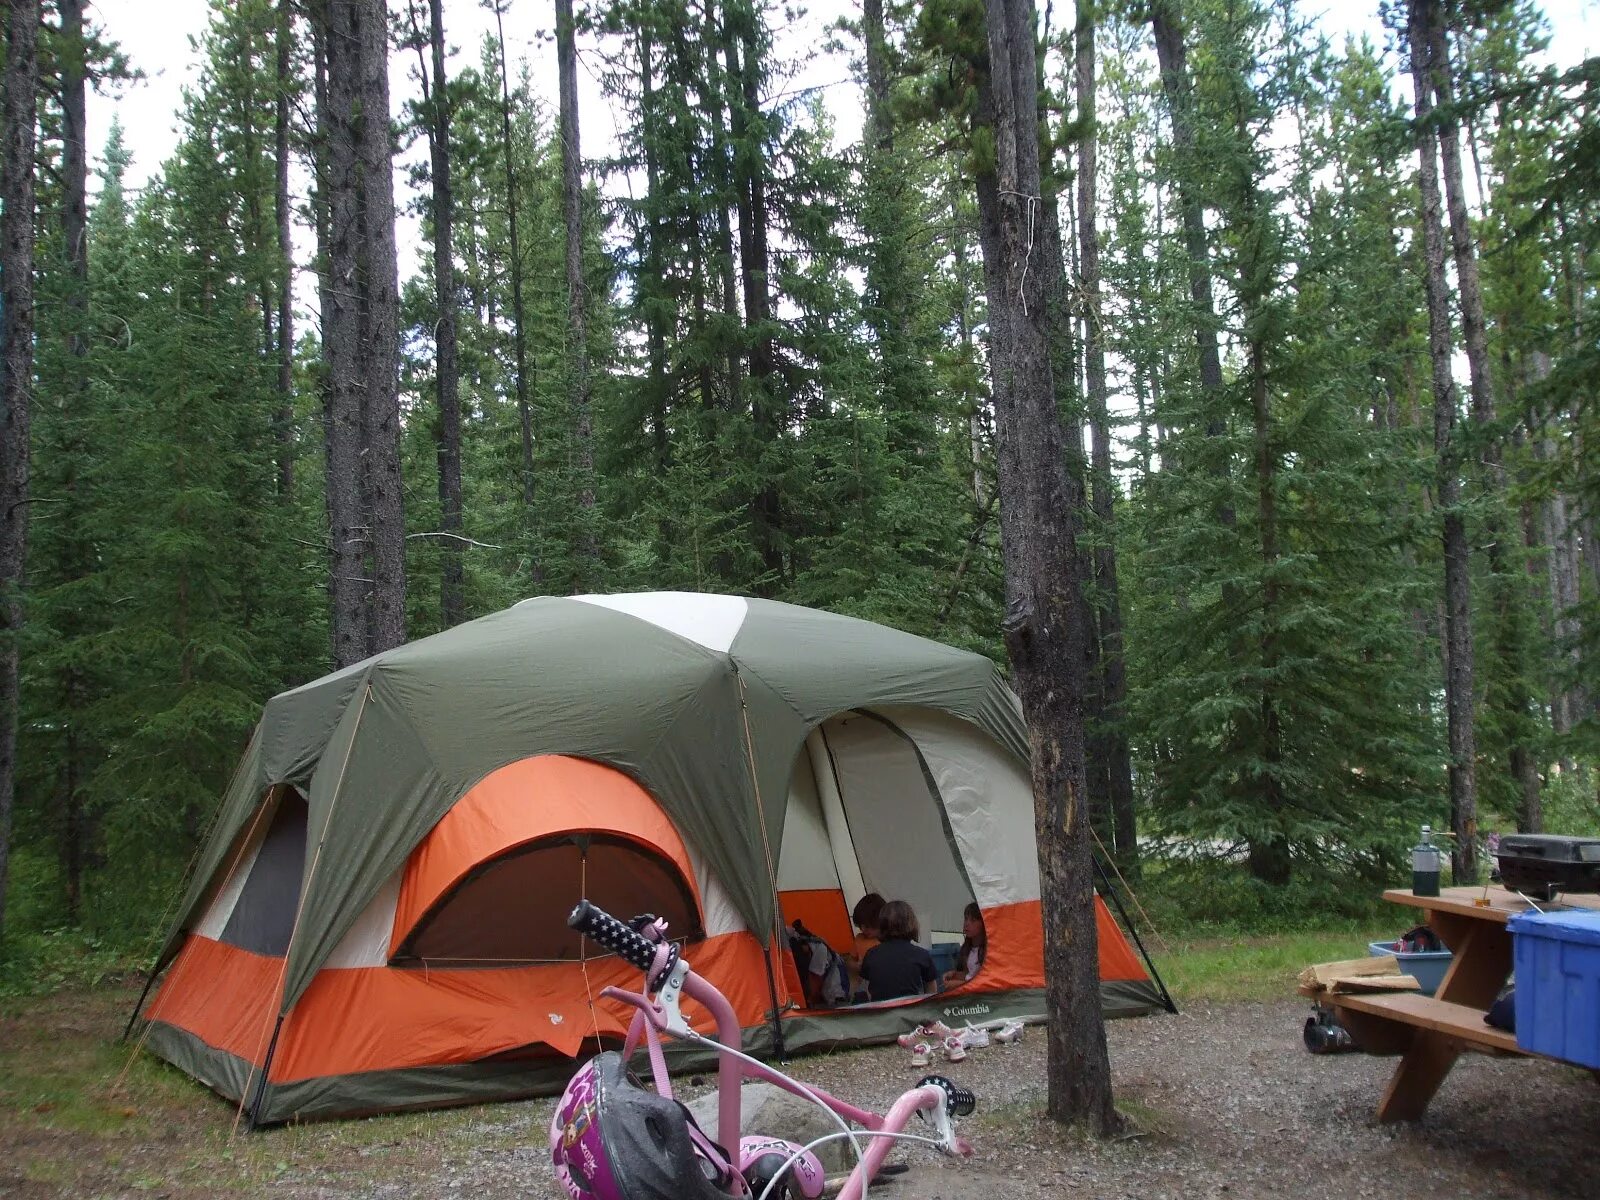 Camping php. Палатка Woods 6 мест. Woods палатка канадская. Спот ИТ кемпинг. Добро пожаловать в кемпинг.